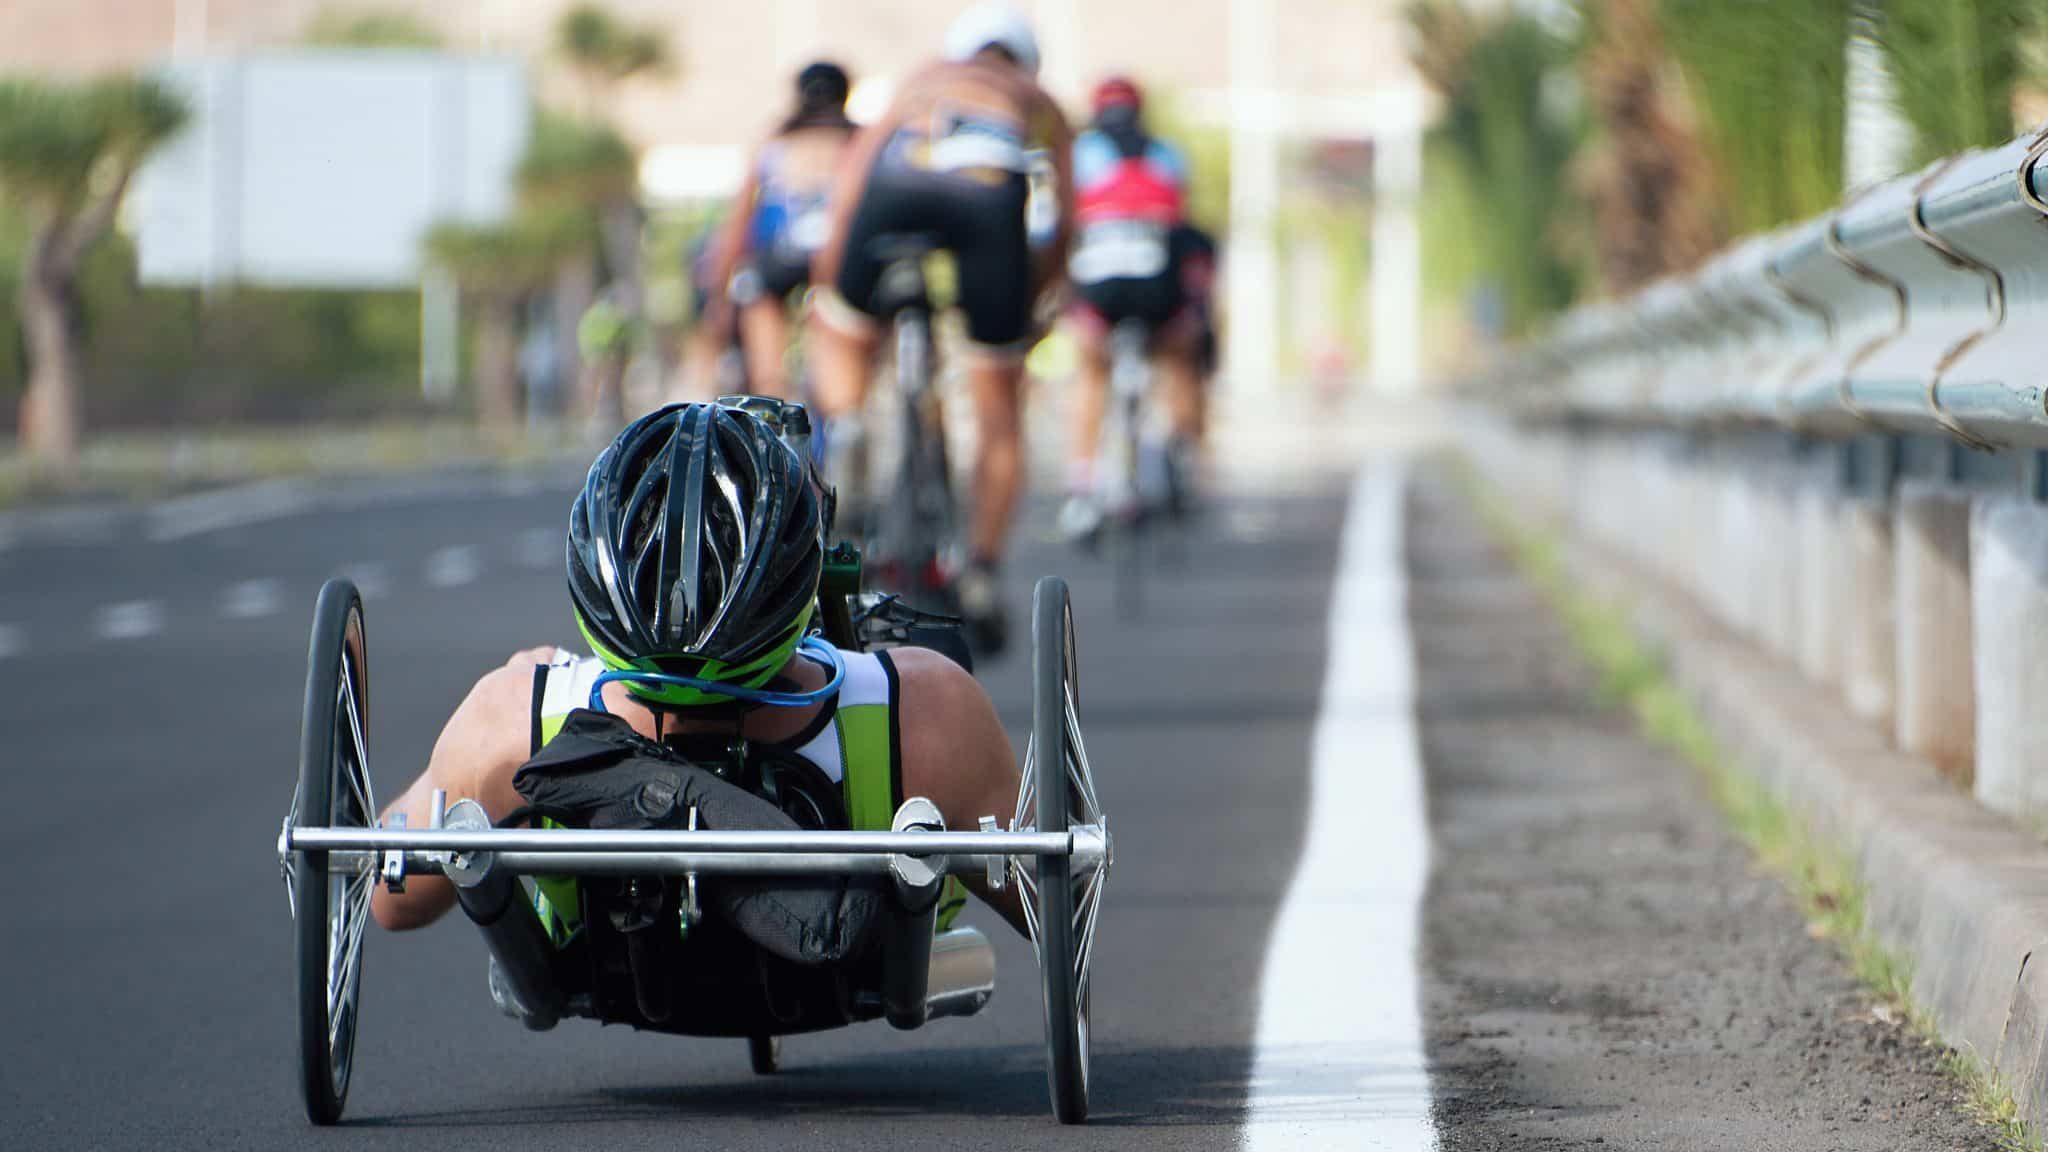 Triathlète paraplégique, il réalise les rêves sportifs des autres